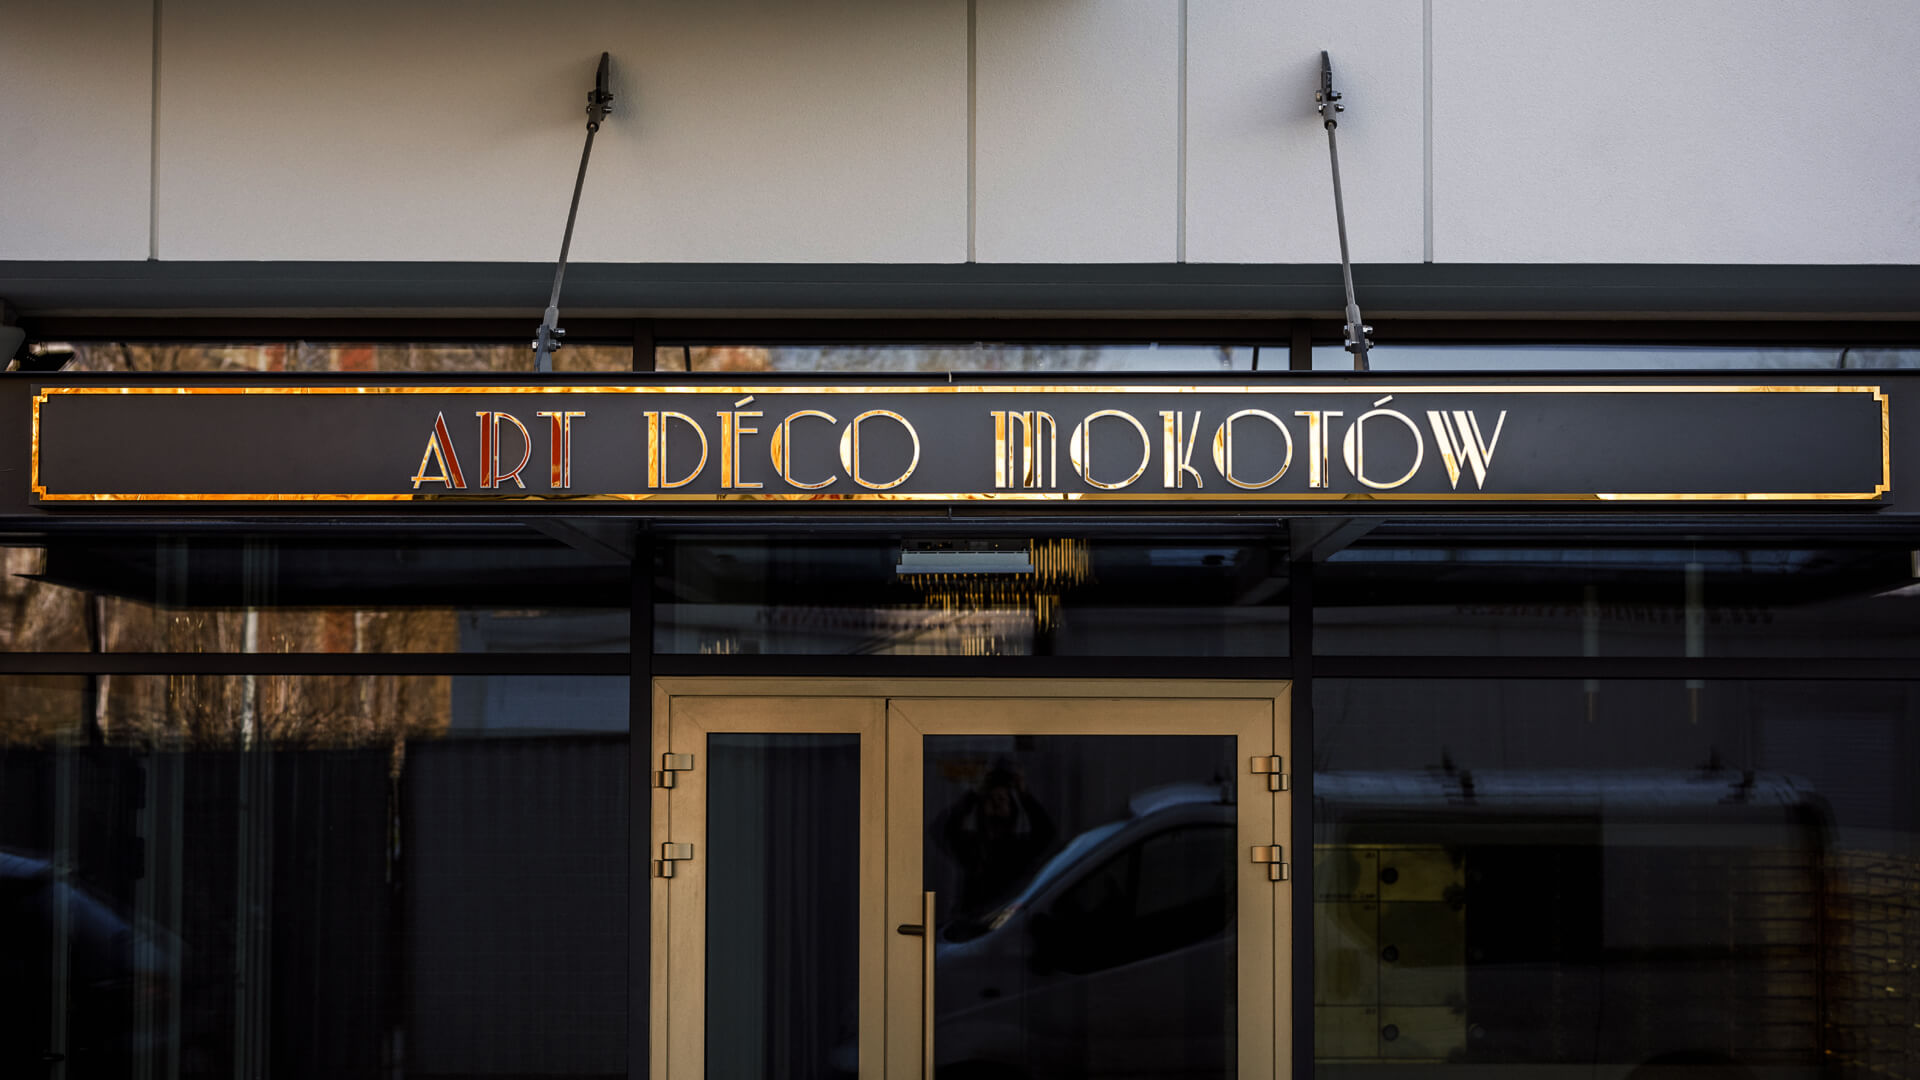 Art Deco Mokotow - Goudkleurige dibond kist boven de ingang.